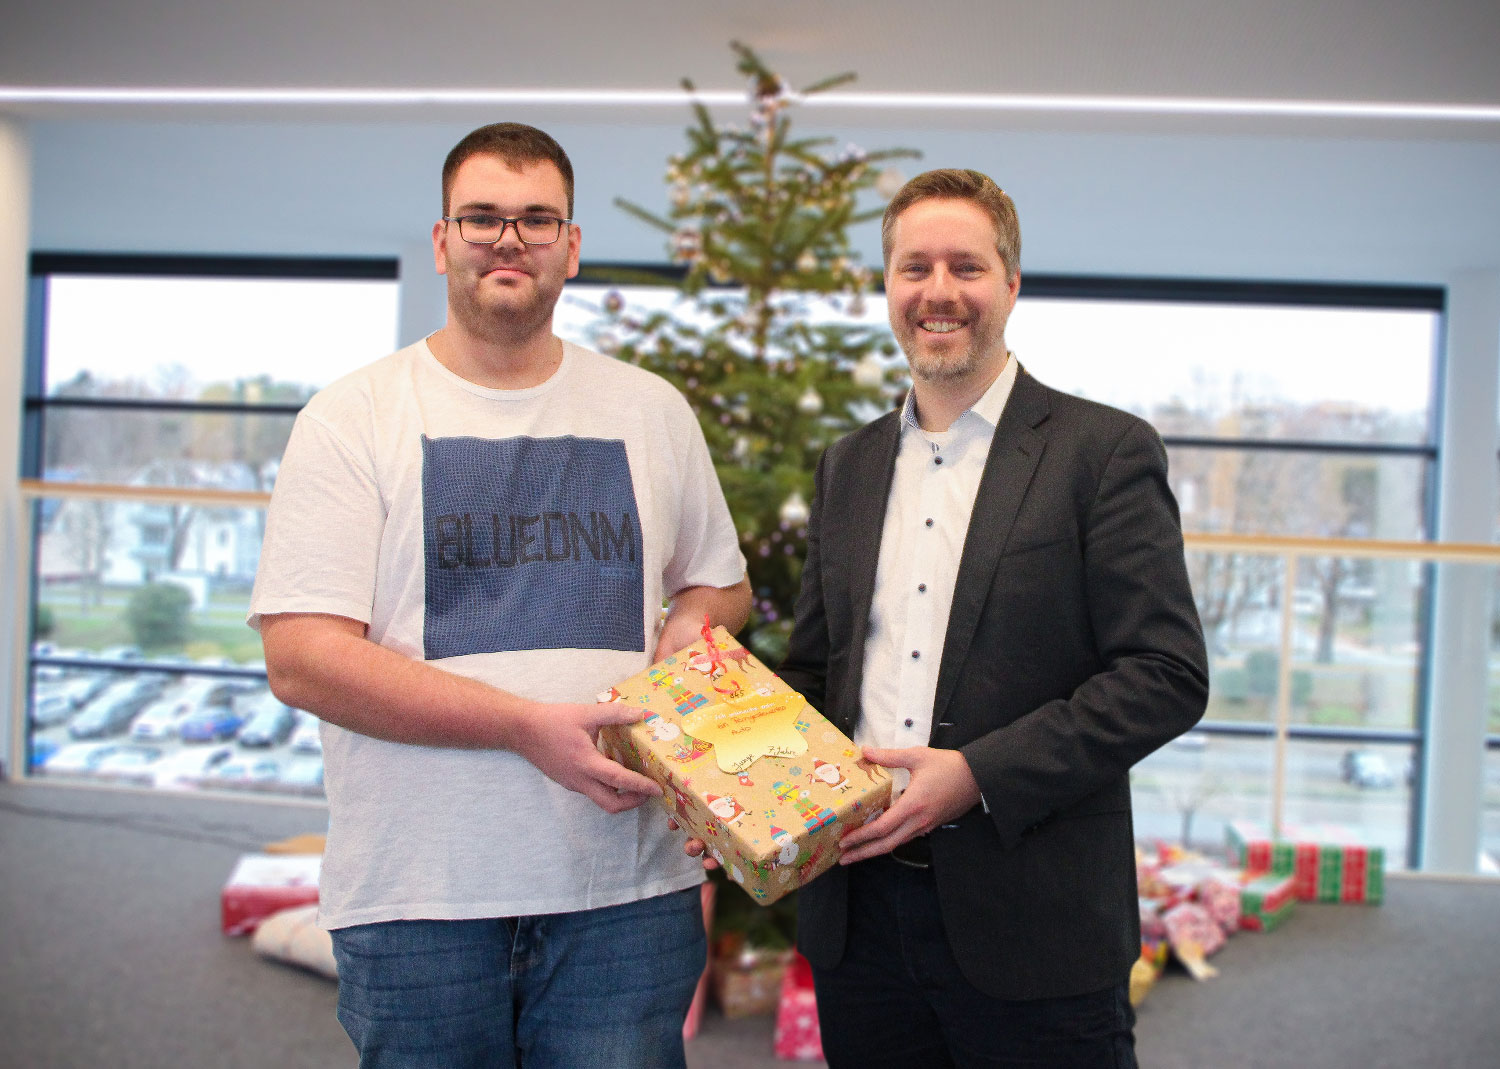 Unterstützung der DRK-Weihnachtsaktion: Prof. Eric Bodden (Direktor am Fraunhofer IEM) übergibt 40 Geschenke an Andre Kortmann (Jugendrotkreuz Paderborn).